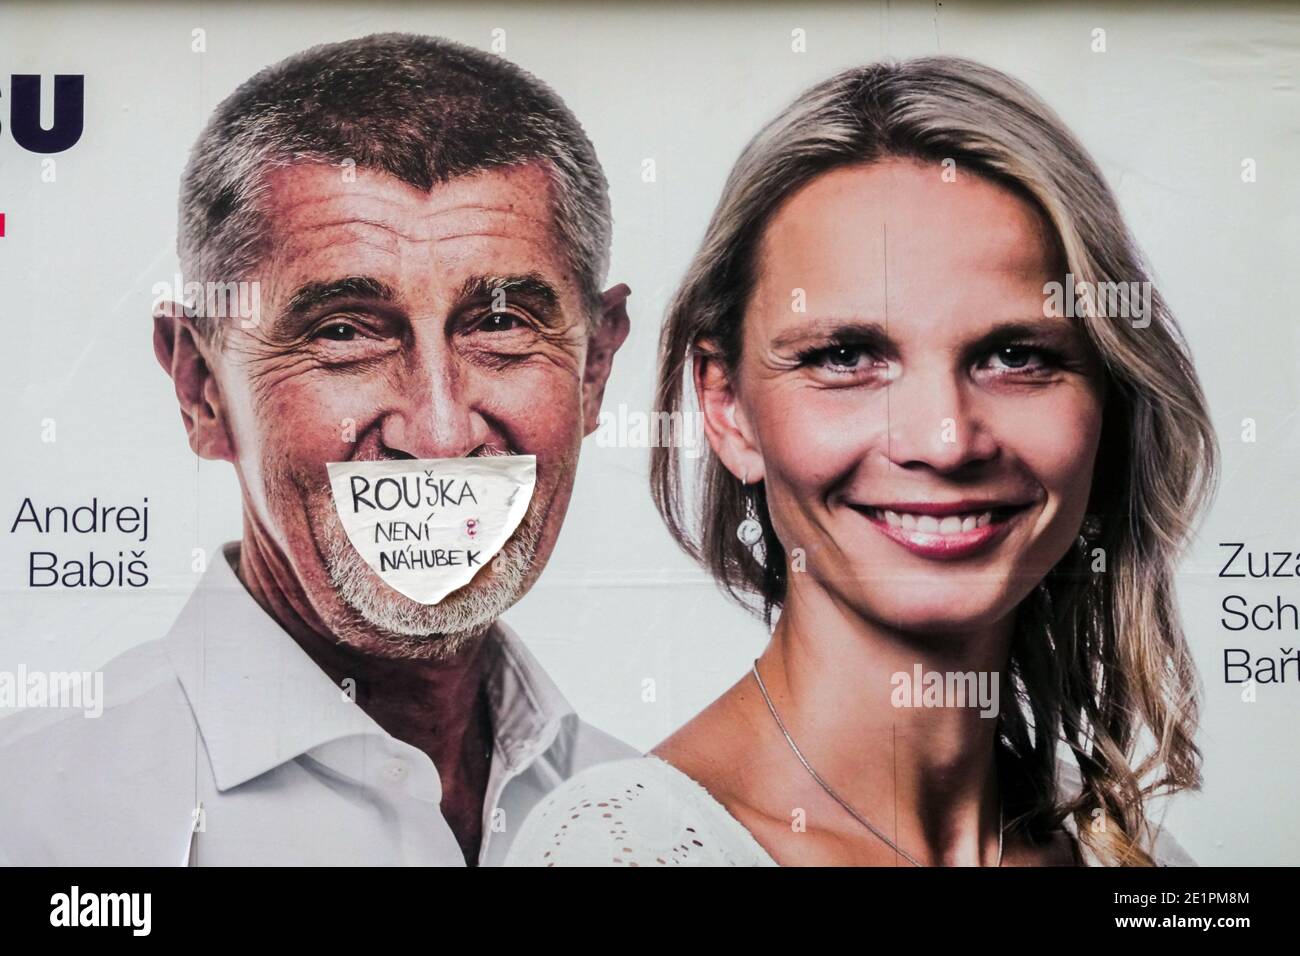 Andrej Babis auf Wahlplakat mit Gesichtsmaske - Gesichtsmaske ist keine Schnauze Stockfoto